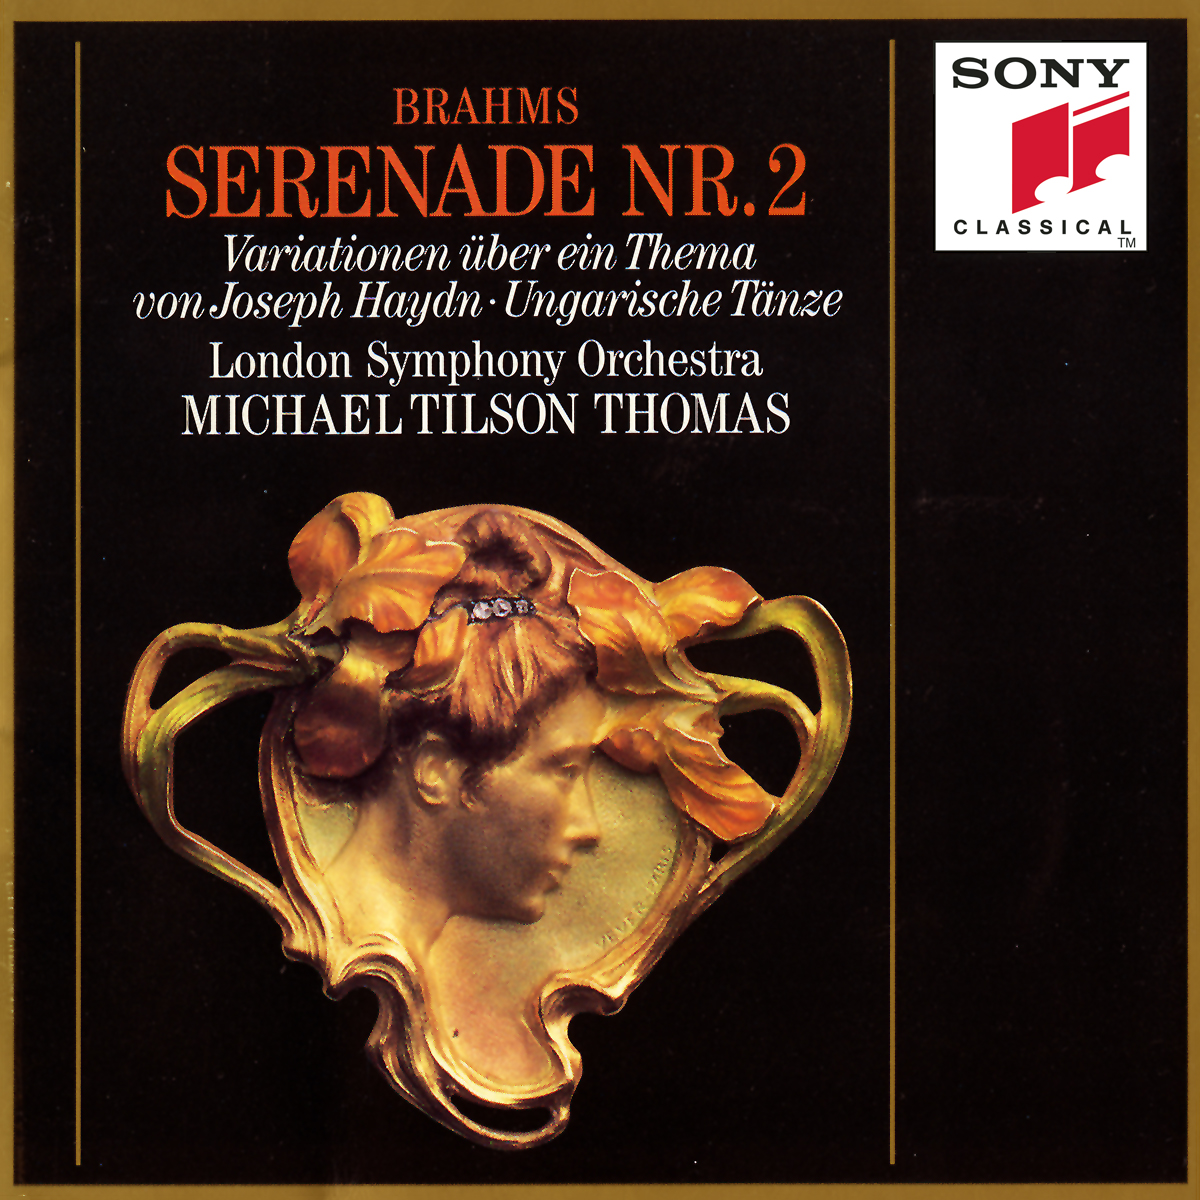 Serenade No. 2 in A Major, Op. 16 for Small Orchestra:II. Scherzo: Vivace, Trio